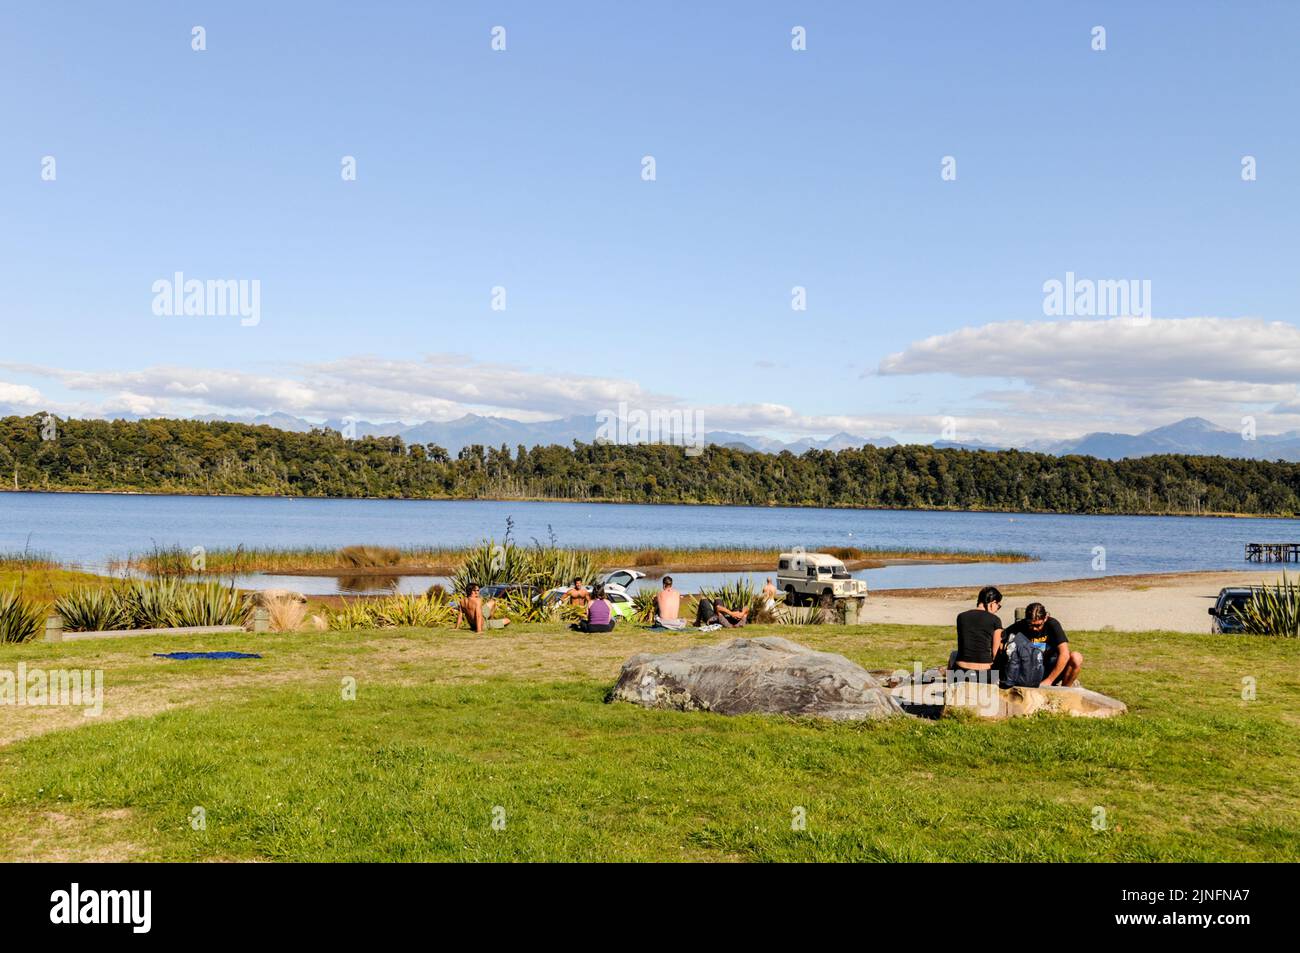 Los visitantes se relajan en la bahía de Shanghai en la reserva escénica del lago Mahinapua en Ruatapu cerca de Hokitika en la costa oeste de la isla del sur de Nueva Zelanda. Foto de stock